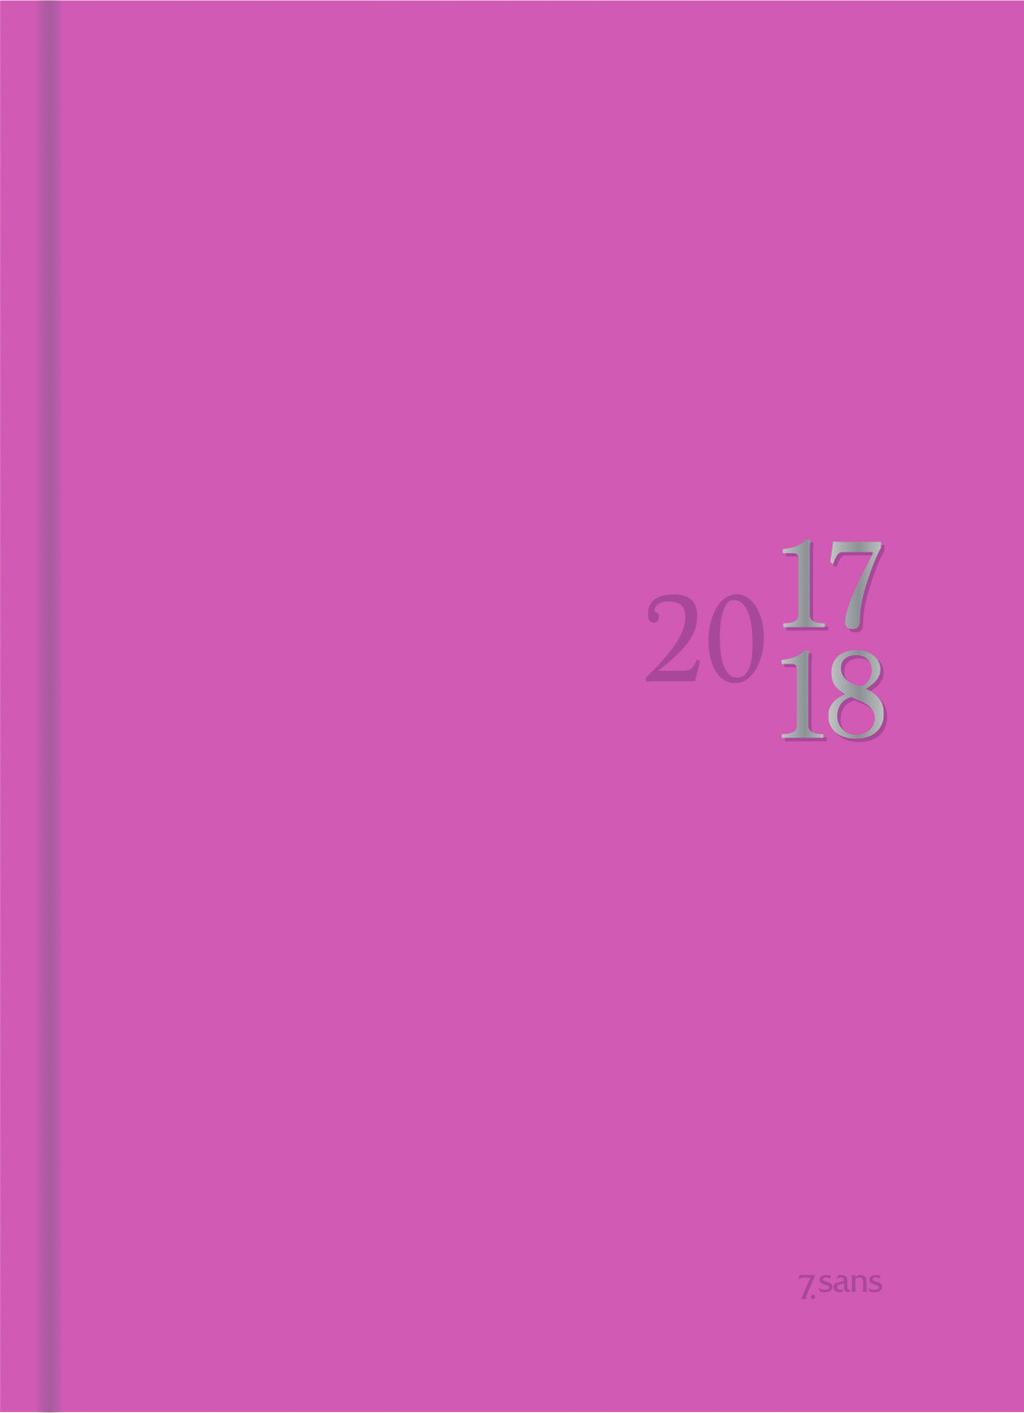 7.sans Colour Type papir: 80 gr hvitt offset papir Innbundet Hjørneperforering e navnedager Ny farge 27-172 26 132 27-172 26 142 Sidestørrelse: 10,5 x 14,8 cm Kartong omslag w(0e5b1h*mmqlnr( 27-172